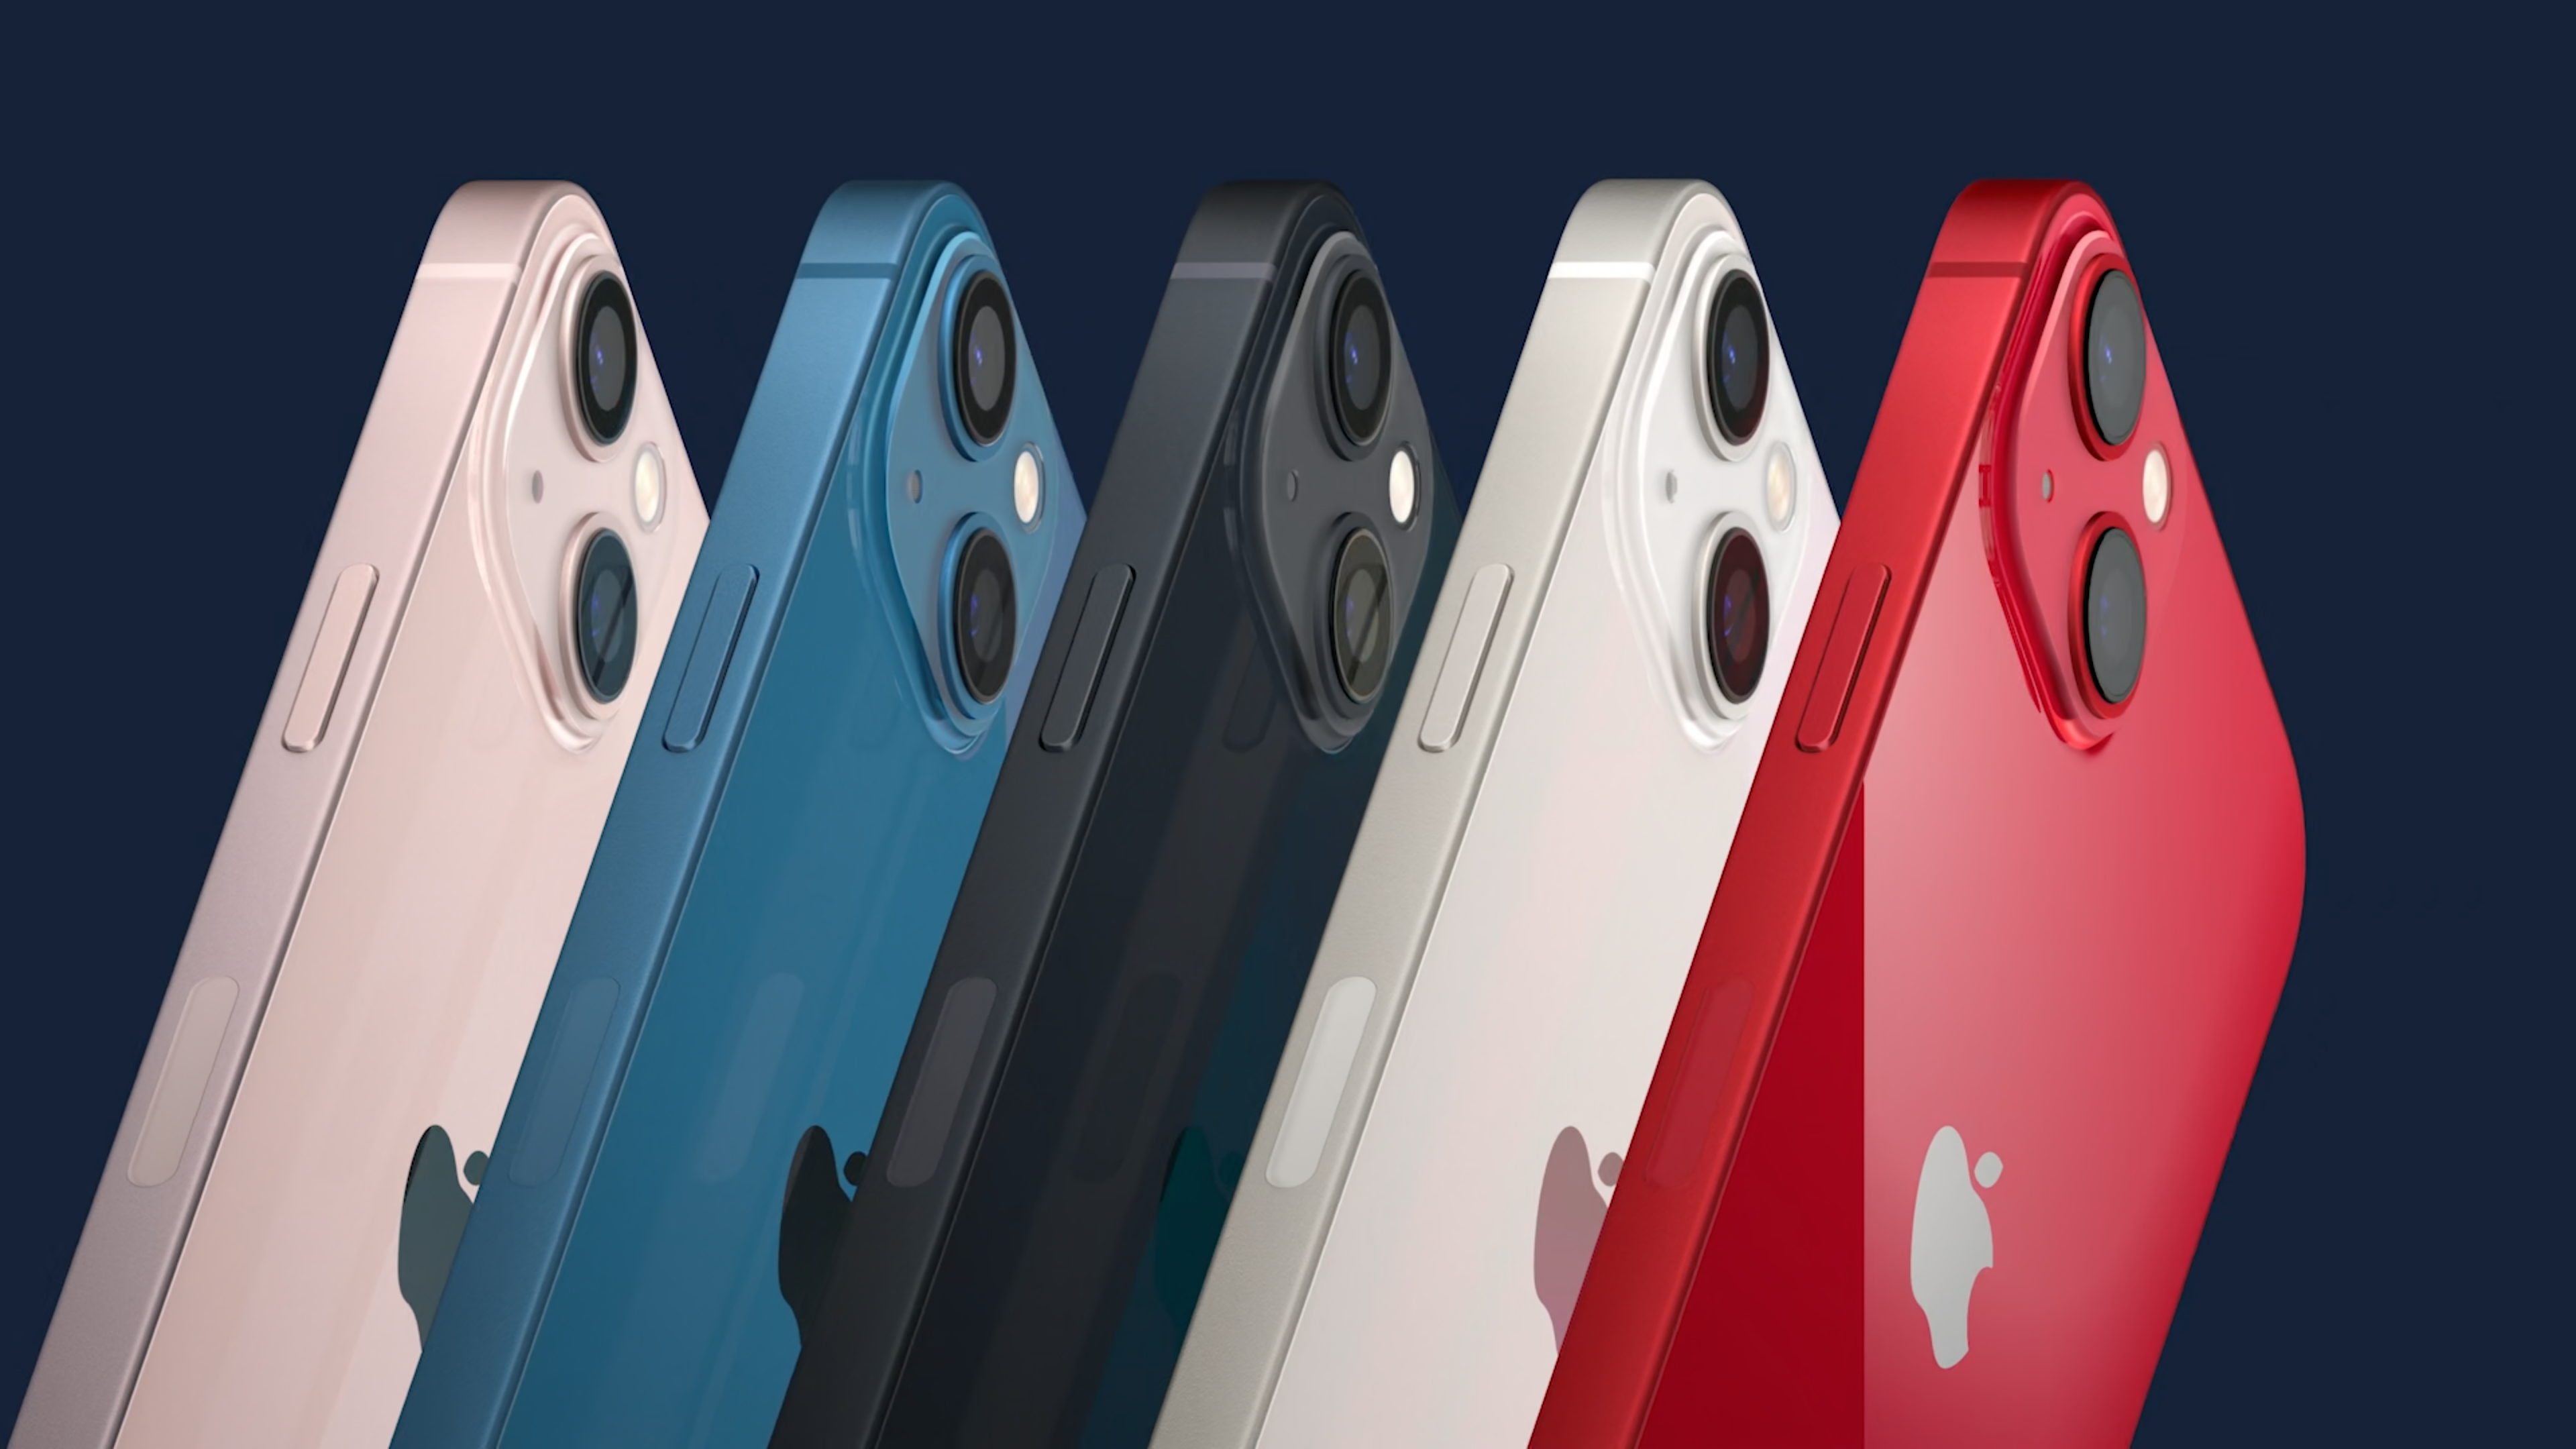 Apple iPhone 13 Mini existuje hned v 5 různých barevných variantách – hvězdně bílá (Starlight), temně inkoustová (Midnight), modrá (Blue), červená (Product RED) a růžová (Pink).